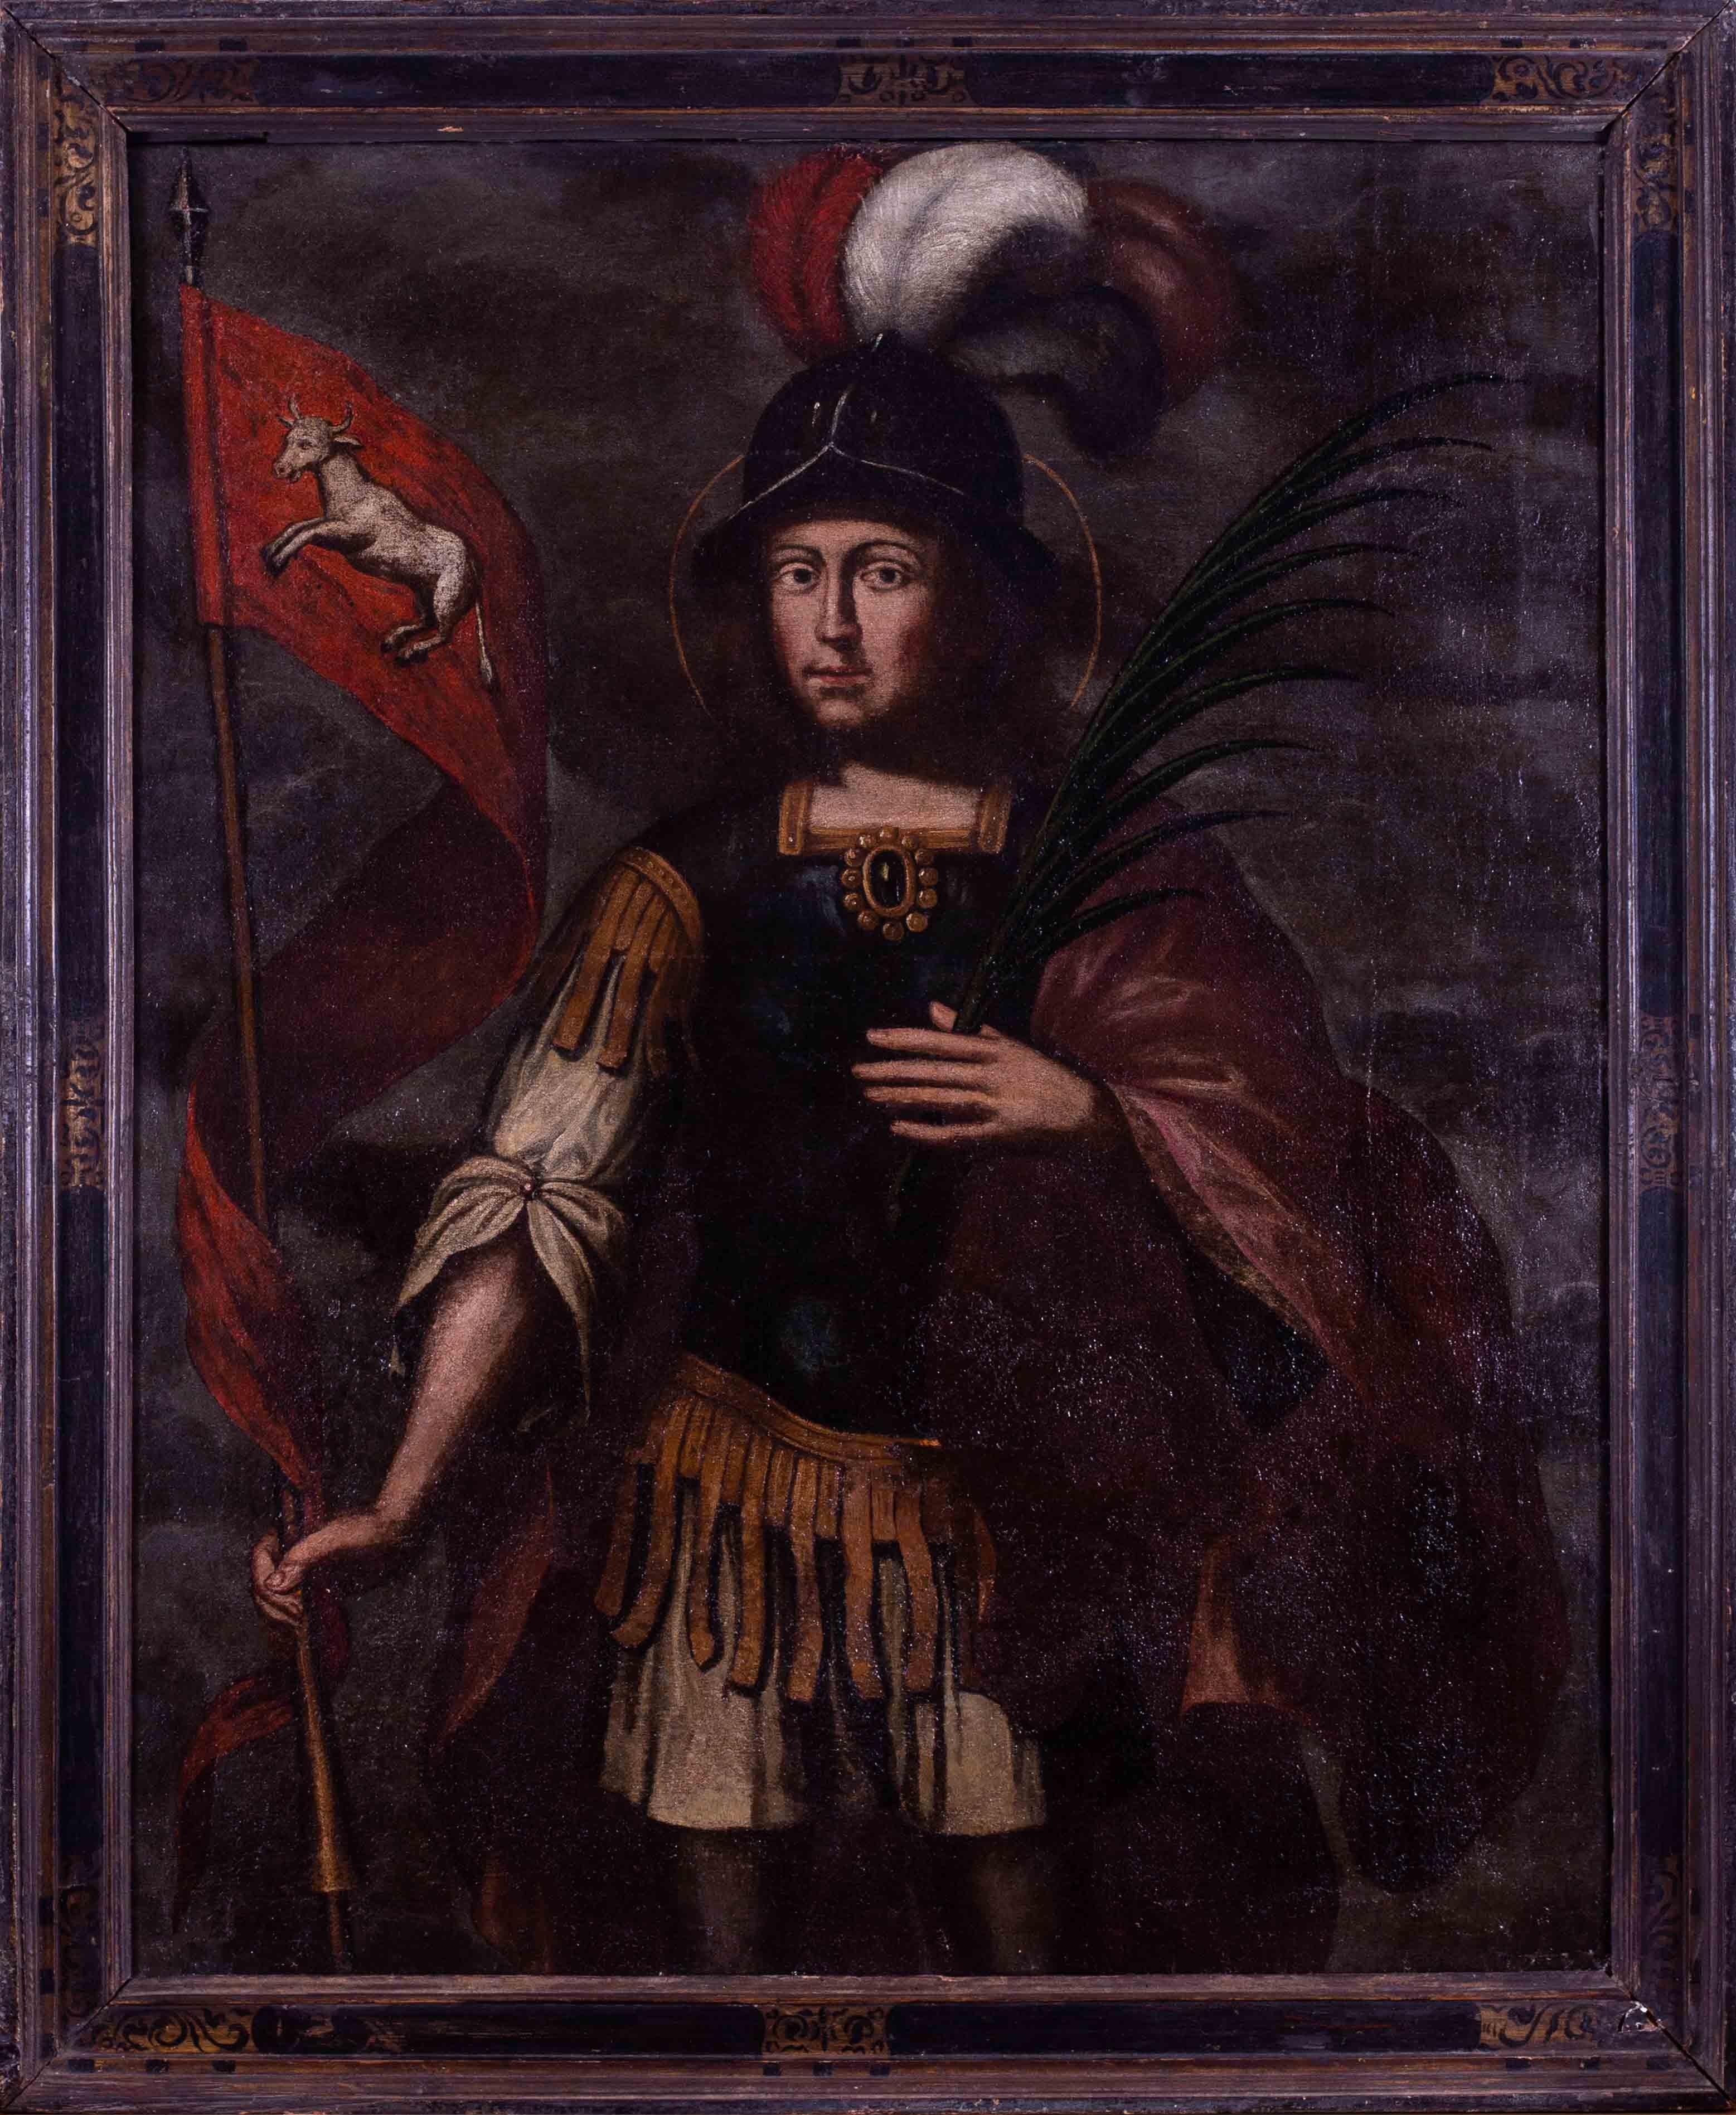 Spanisches Porträt des Heiligen Fermin von Pamplona aus dem 16. Jahrhundert